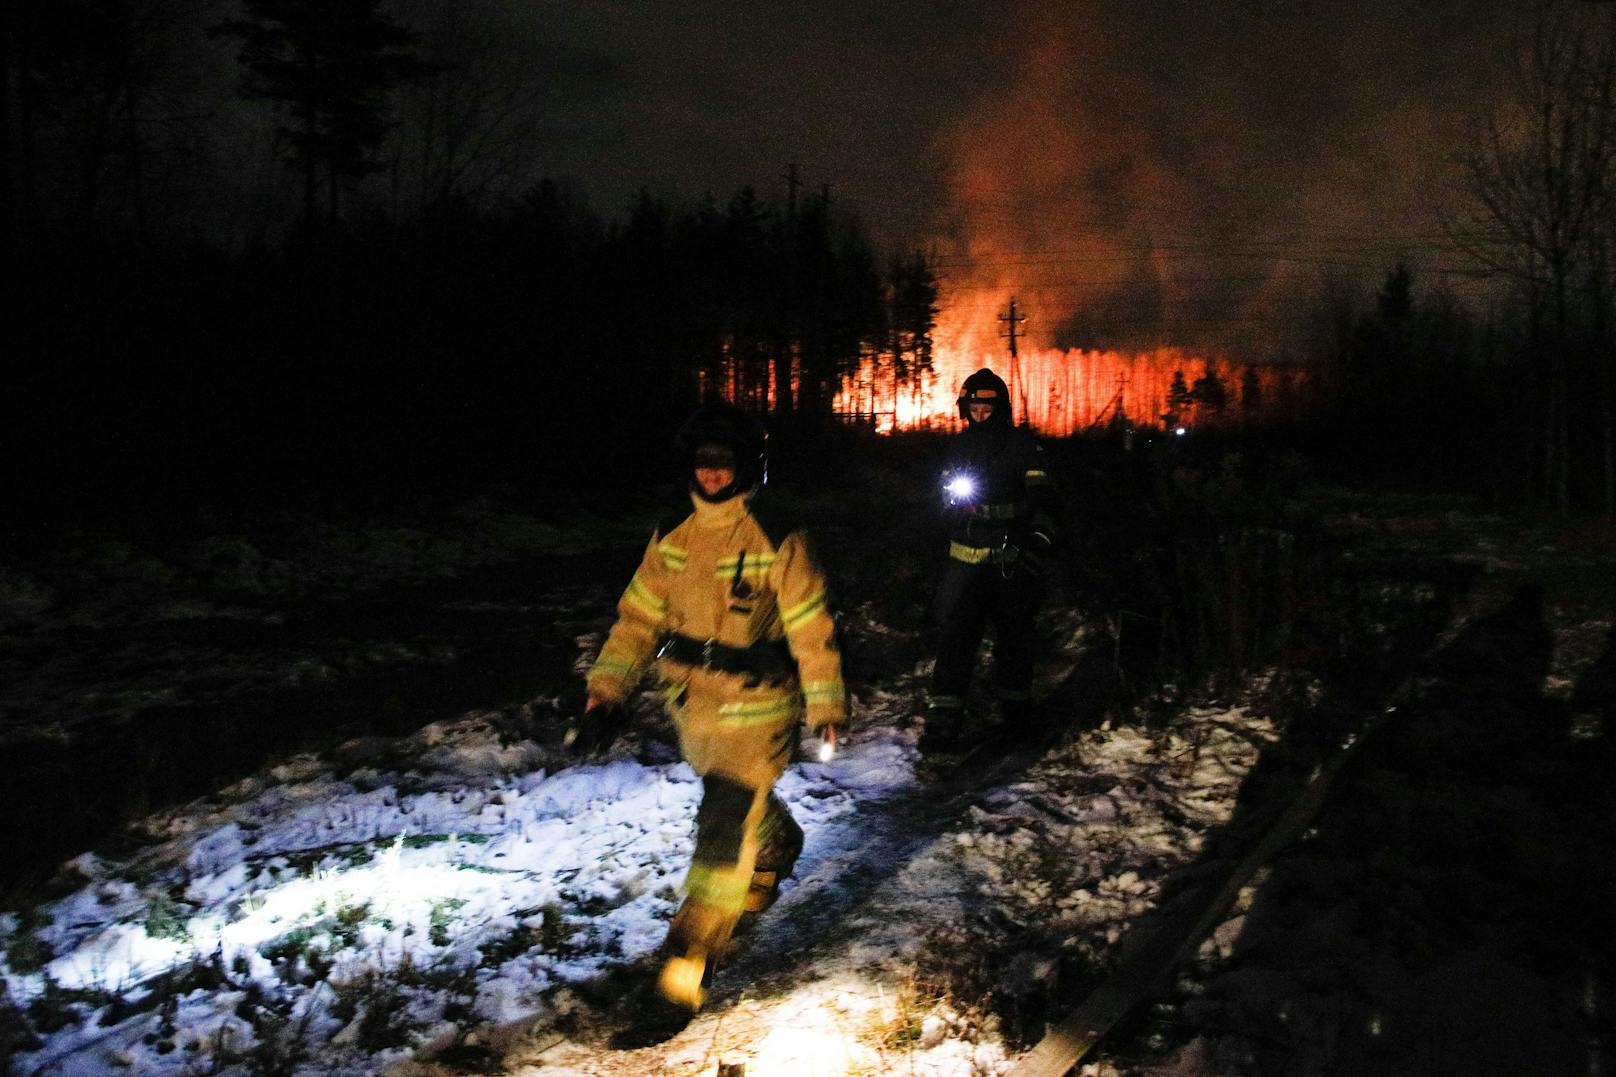 Feuerwehr, Rettungskräfte und ein Notfallteam der Gazprom rückten zur Brandbekämpfung aus.